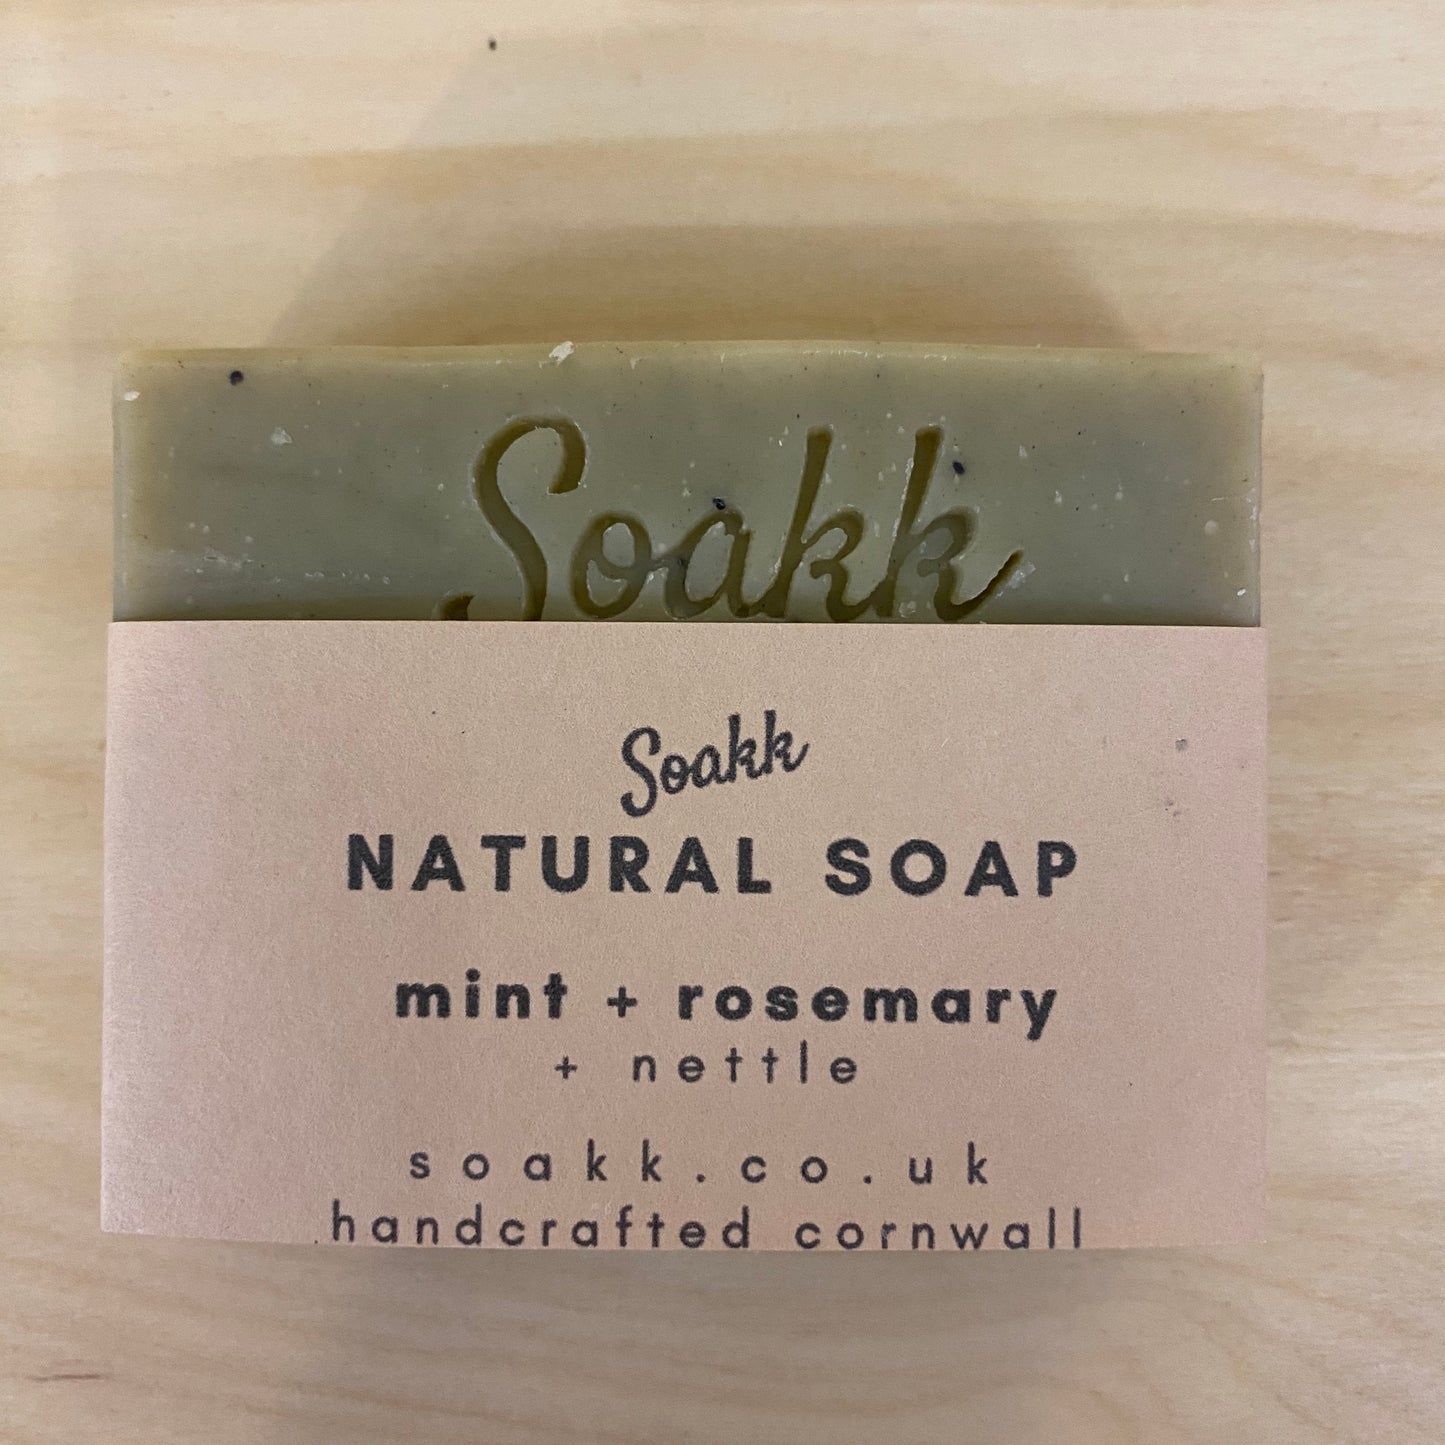 Mint + Rosemary + Nettle Natural soap